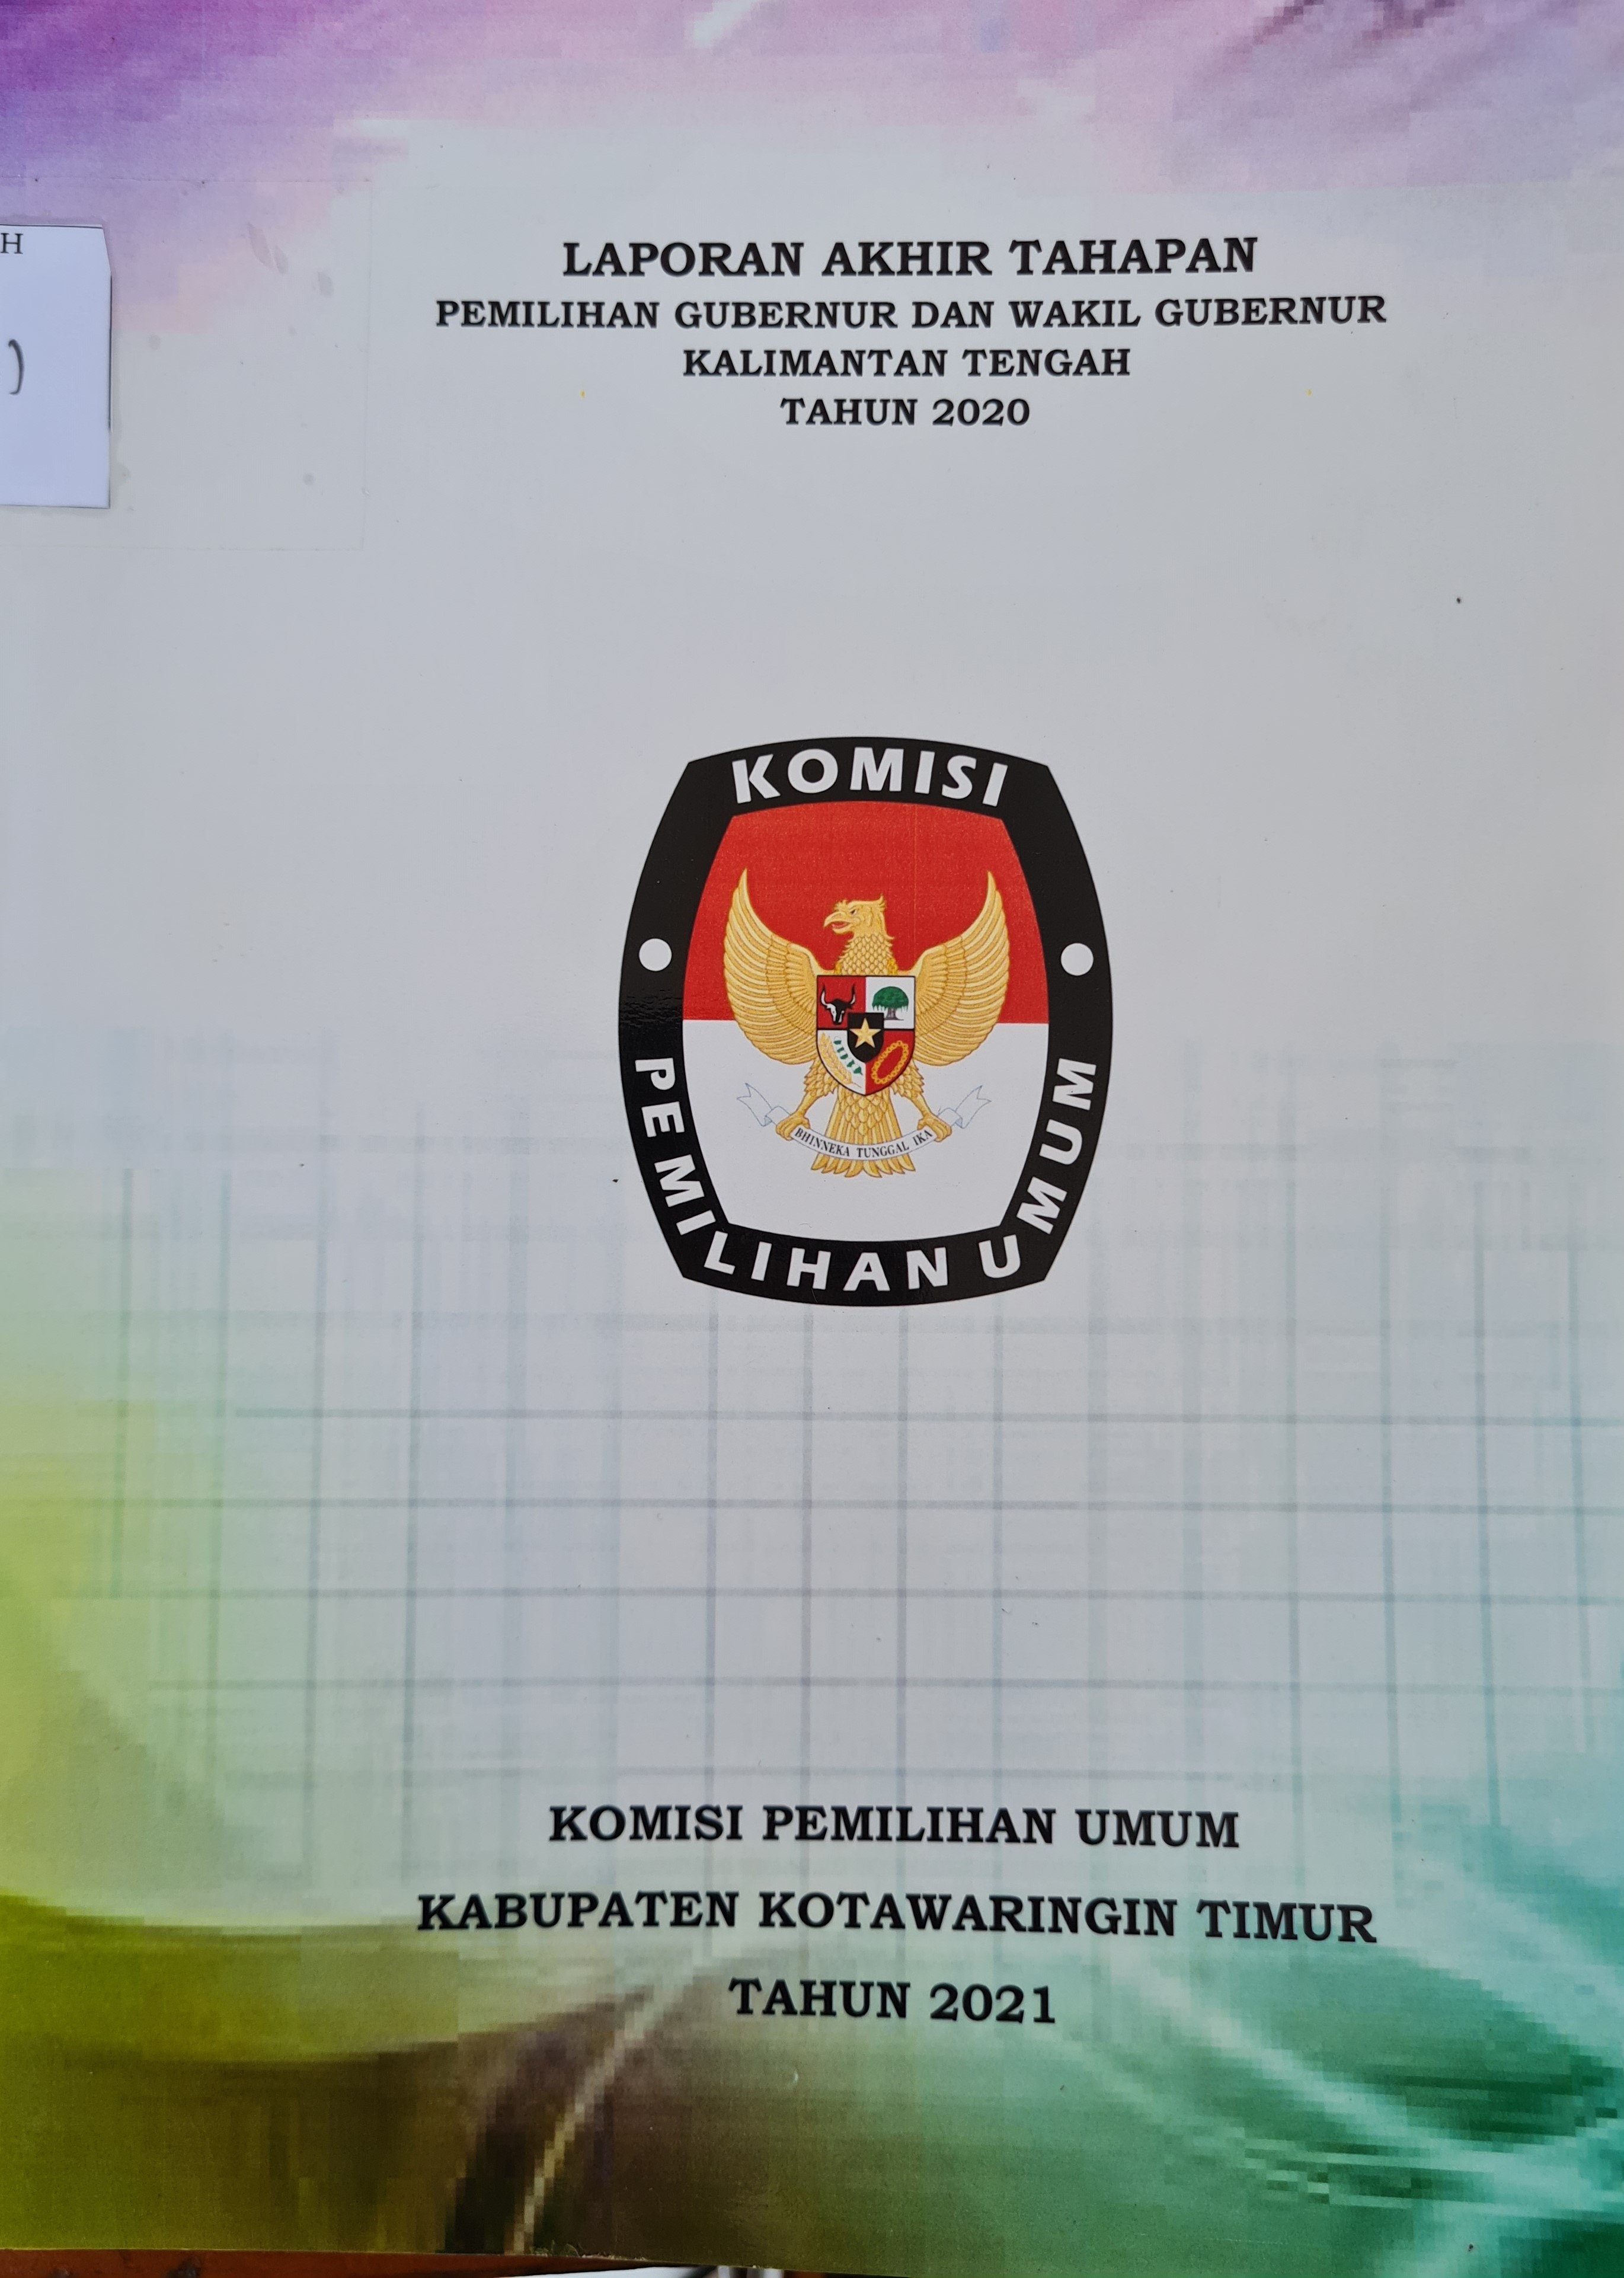 Laporan Akhir Tahapan Pemilihan Gubernur dan Wakil Gubernur Kalimantan Tengah Tahun 2020 di Kabupaten Kotawaringin Timur